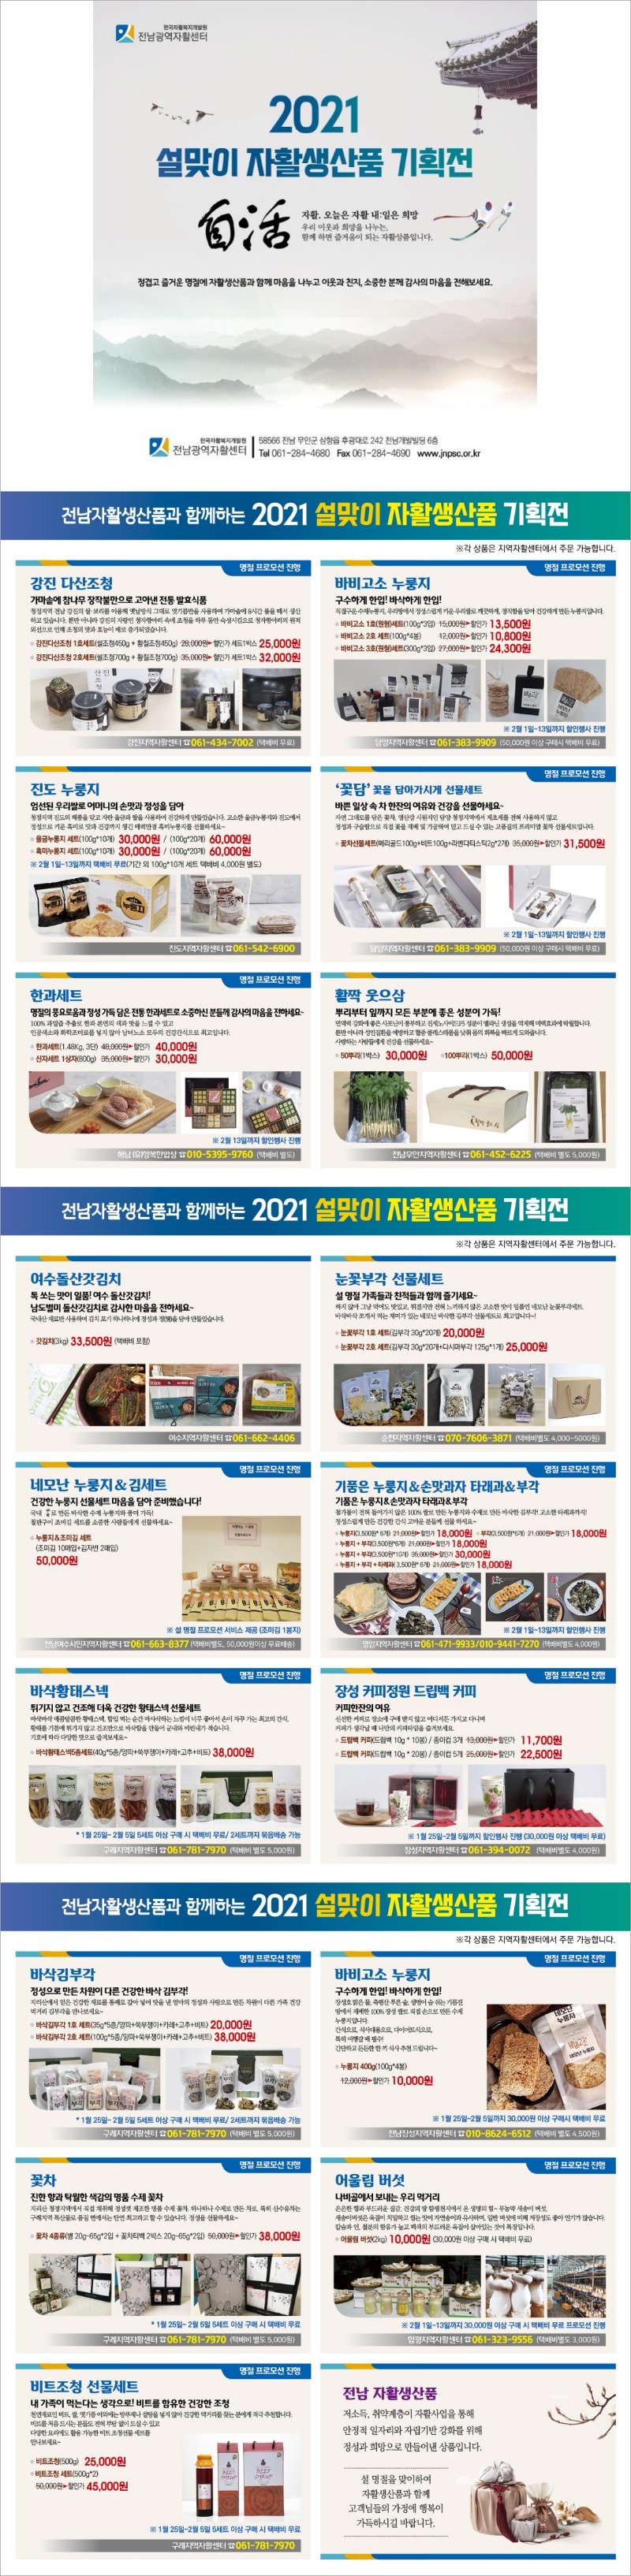 2021 설 명절 자활생산품 기획전 홍보물_Image.jpg